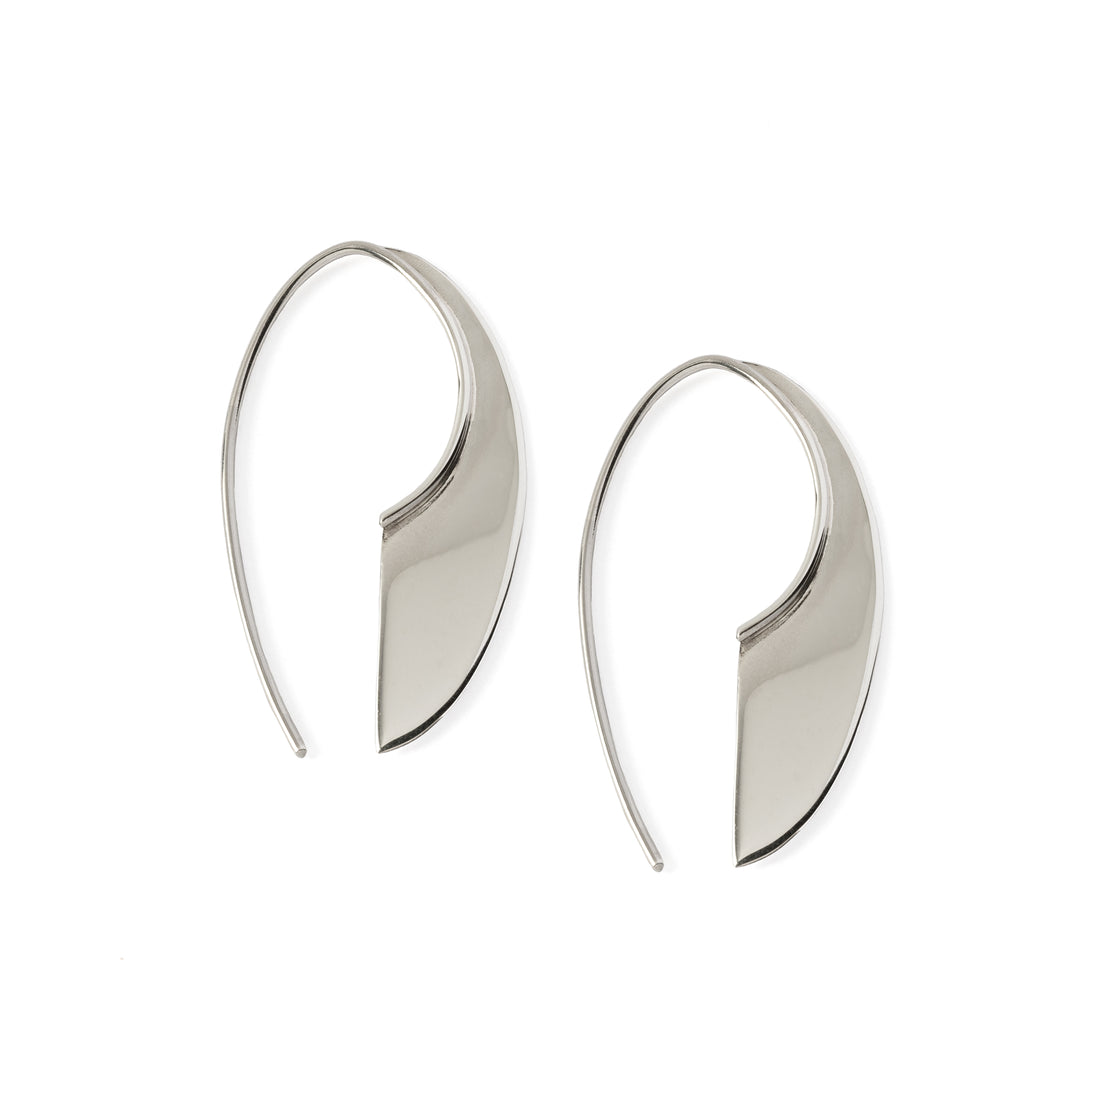 Silver Machete Earrings frontal view